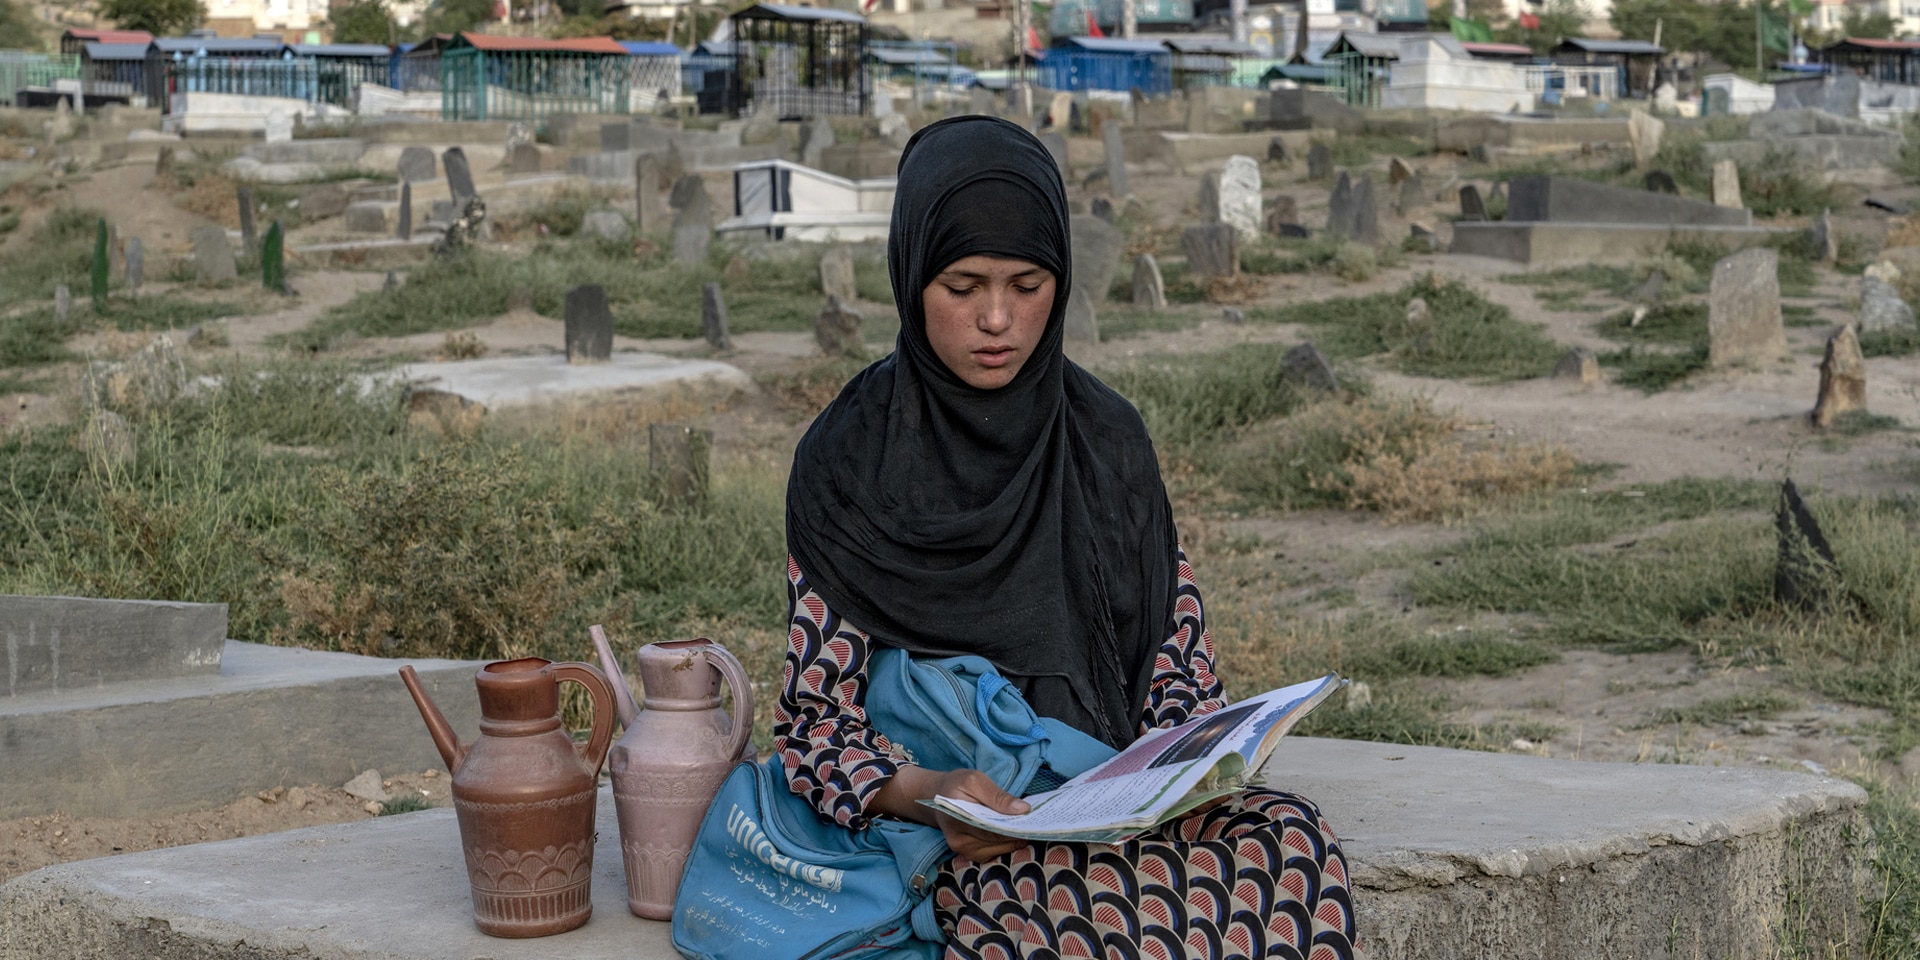 Une fillette assise sur une dalle en pierre lit un livre. Elle a près d’elle un sac estampillé ONU Femmes, et on aperçoit en arrière-plan des habitations sommaires.